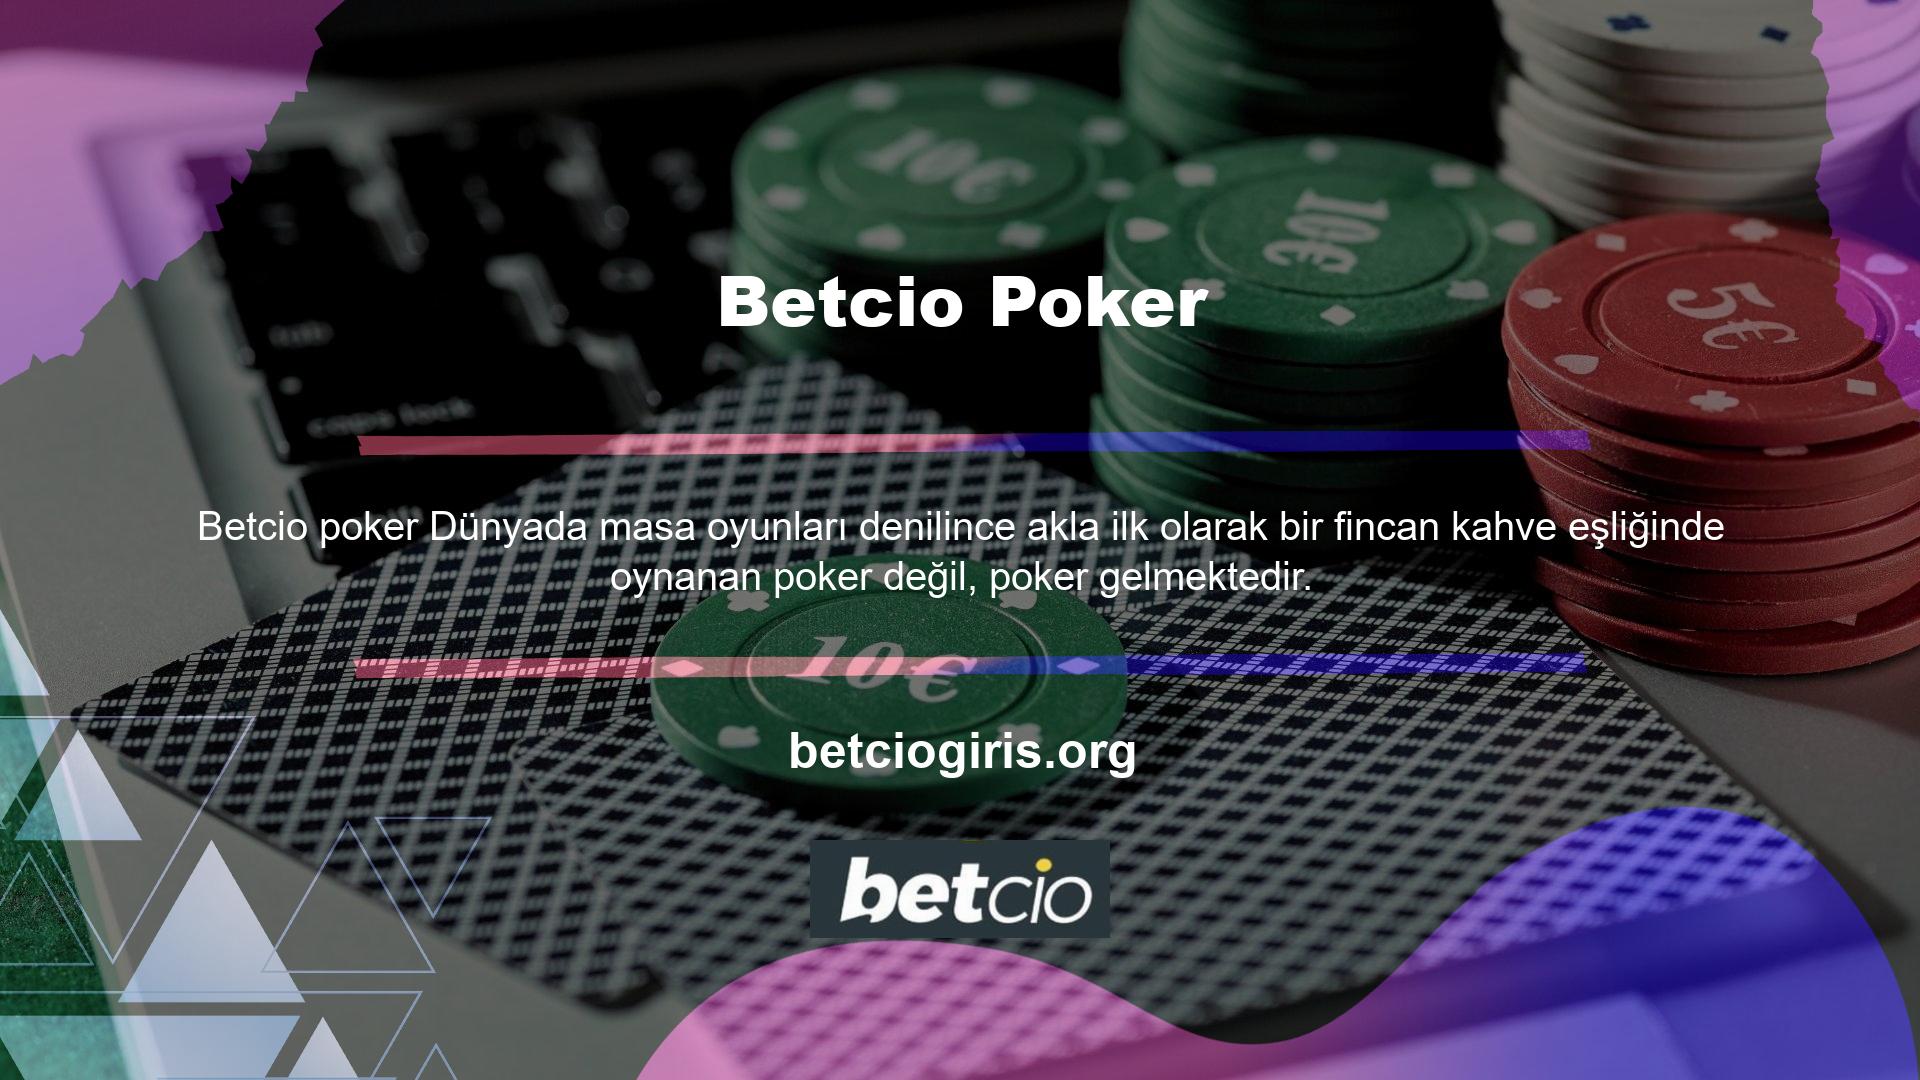 Pokerde, Betcio açıkça kendisi için çok iyi bir alan yaratmıştır